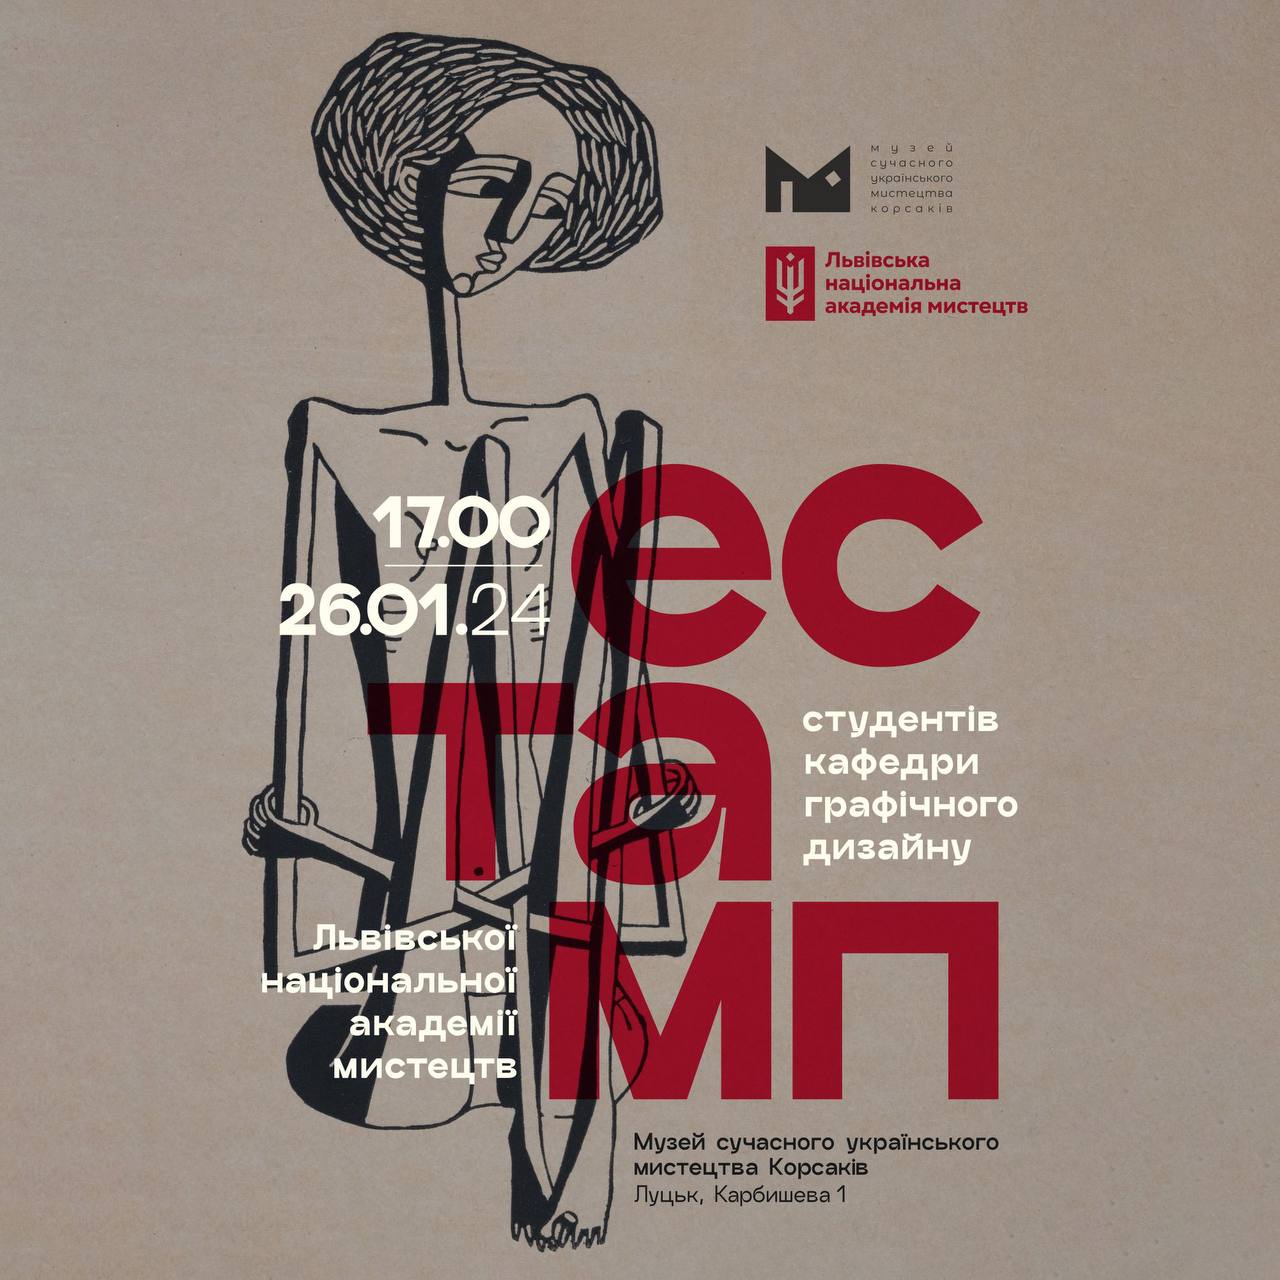 26 січня о 17:00 в Музеї Корсаків відбудеться відкриття виставки робіт студентів кафедри графічного дизайну Львівської національної академії мистецтв «Естамп»